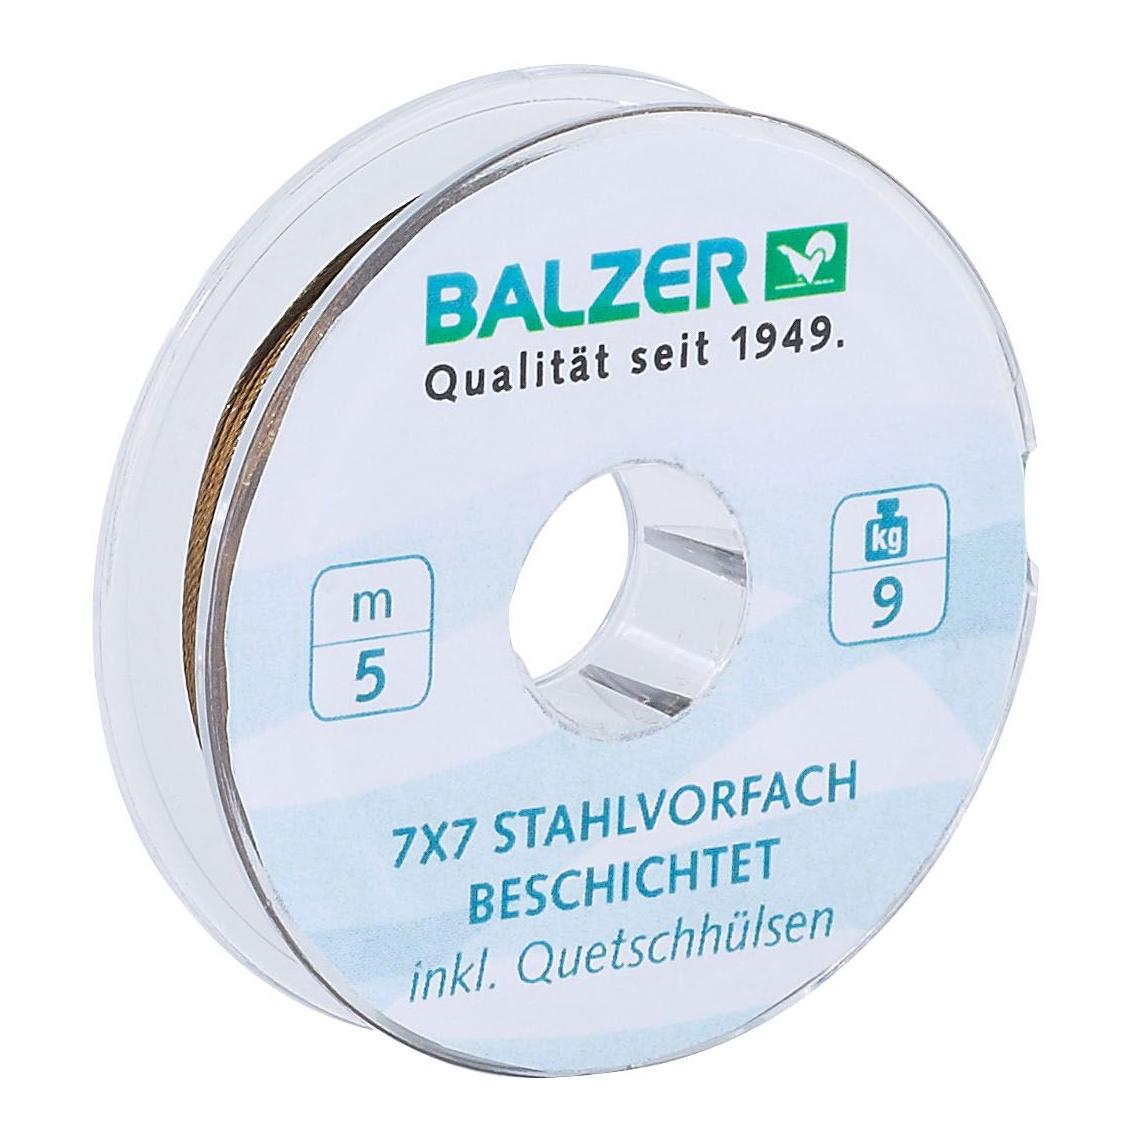 Image of Balzer 7x7 Stahlvorfach 5m beschichtet - Stahlvorfach bei fischen.ch